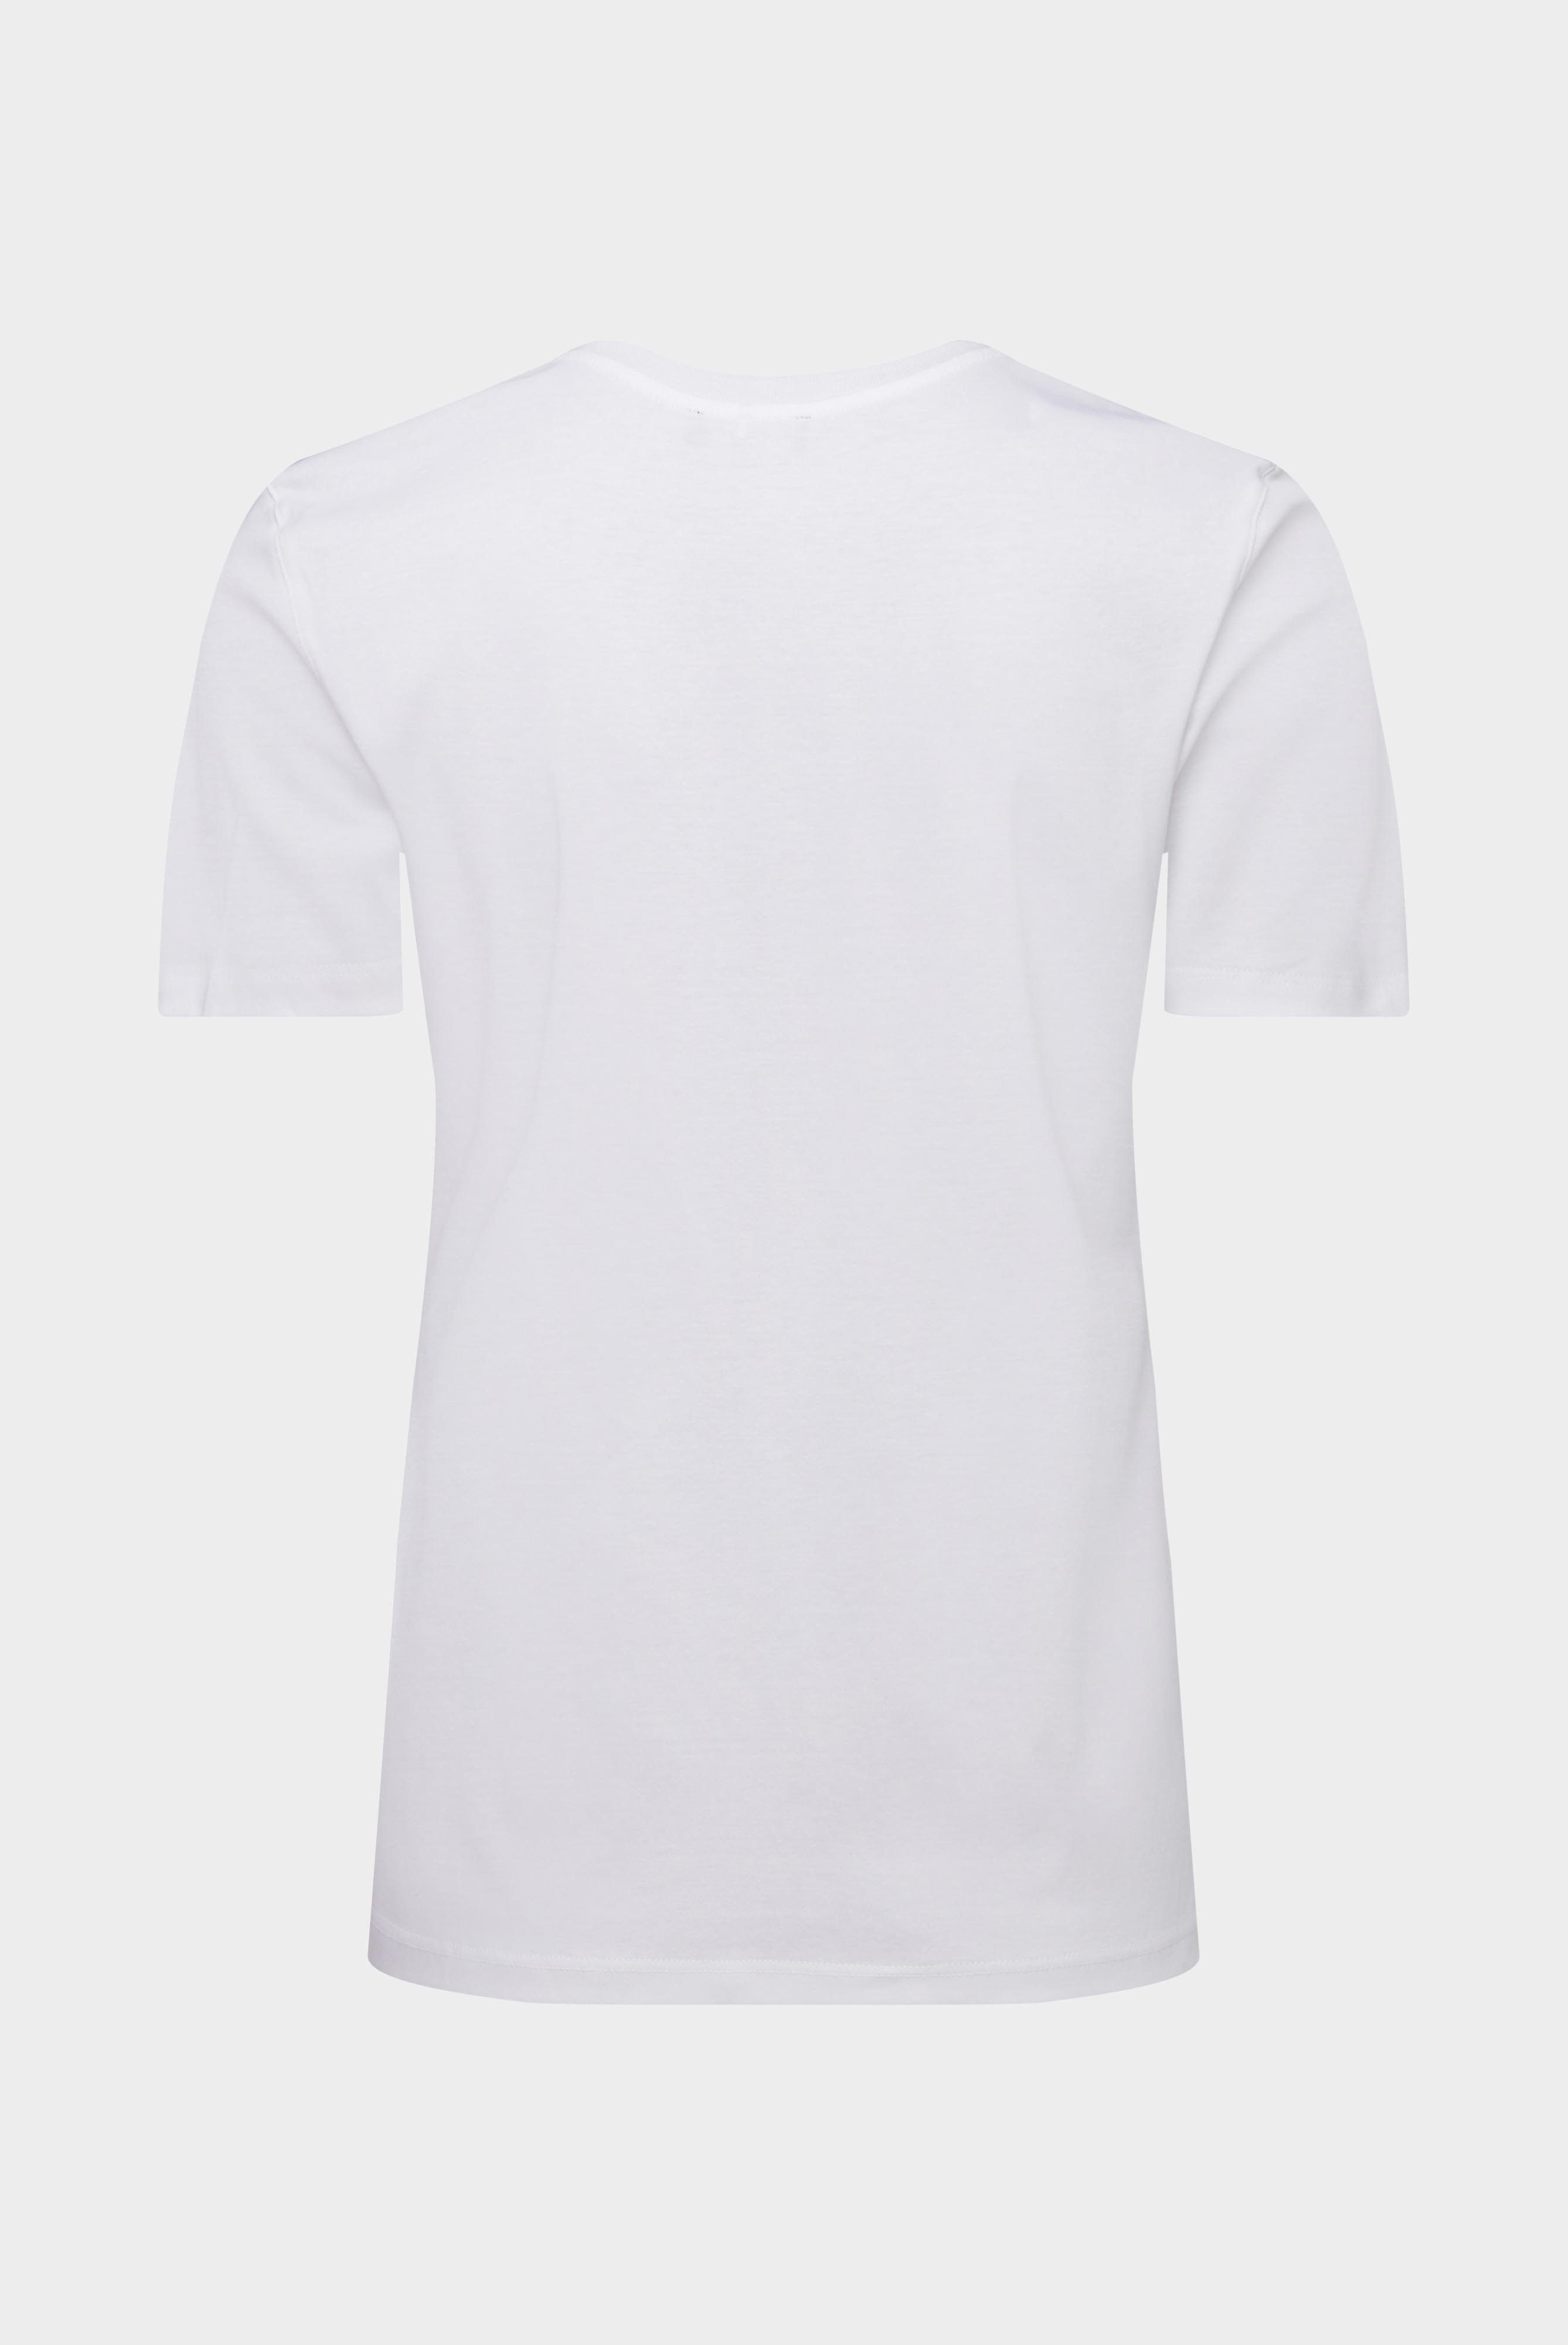 Tops & T-Shirts+Jersey T-Shirt+05.6384.18.180031.000.48